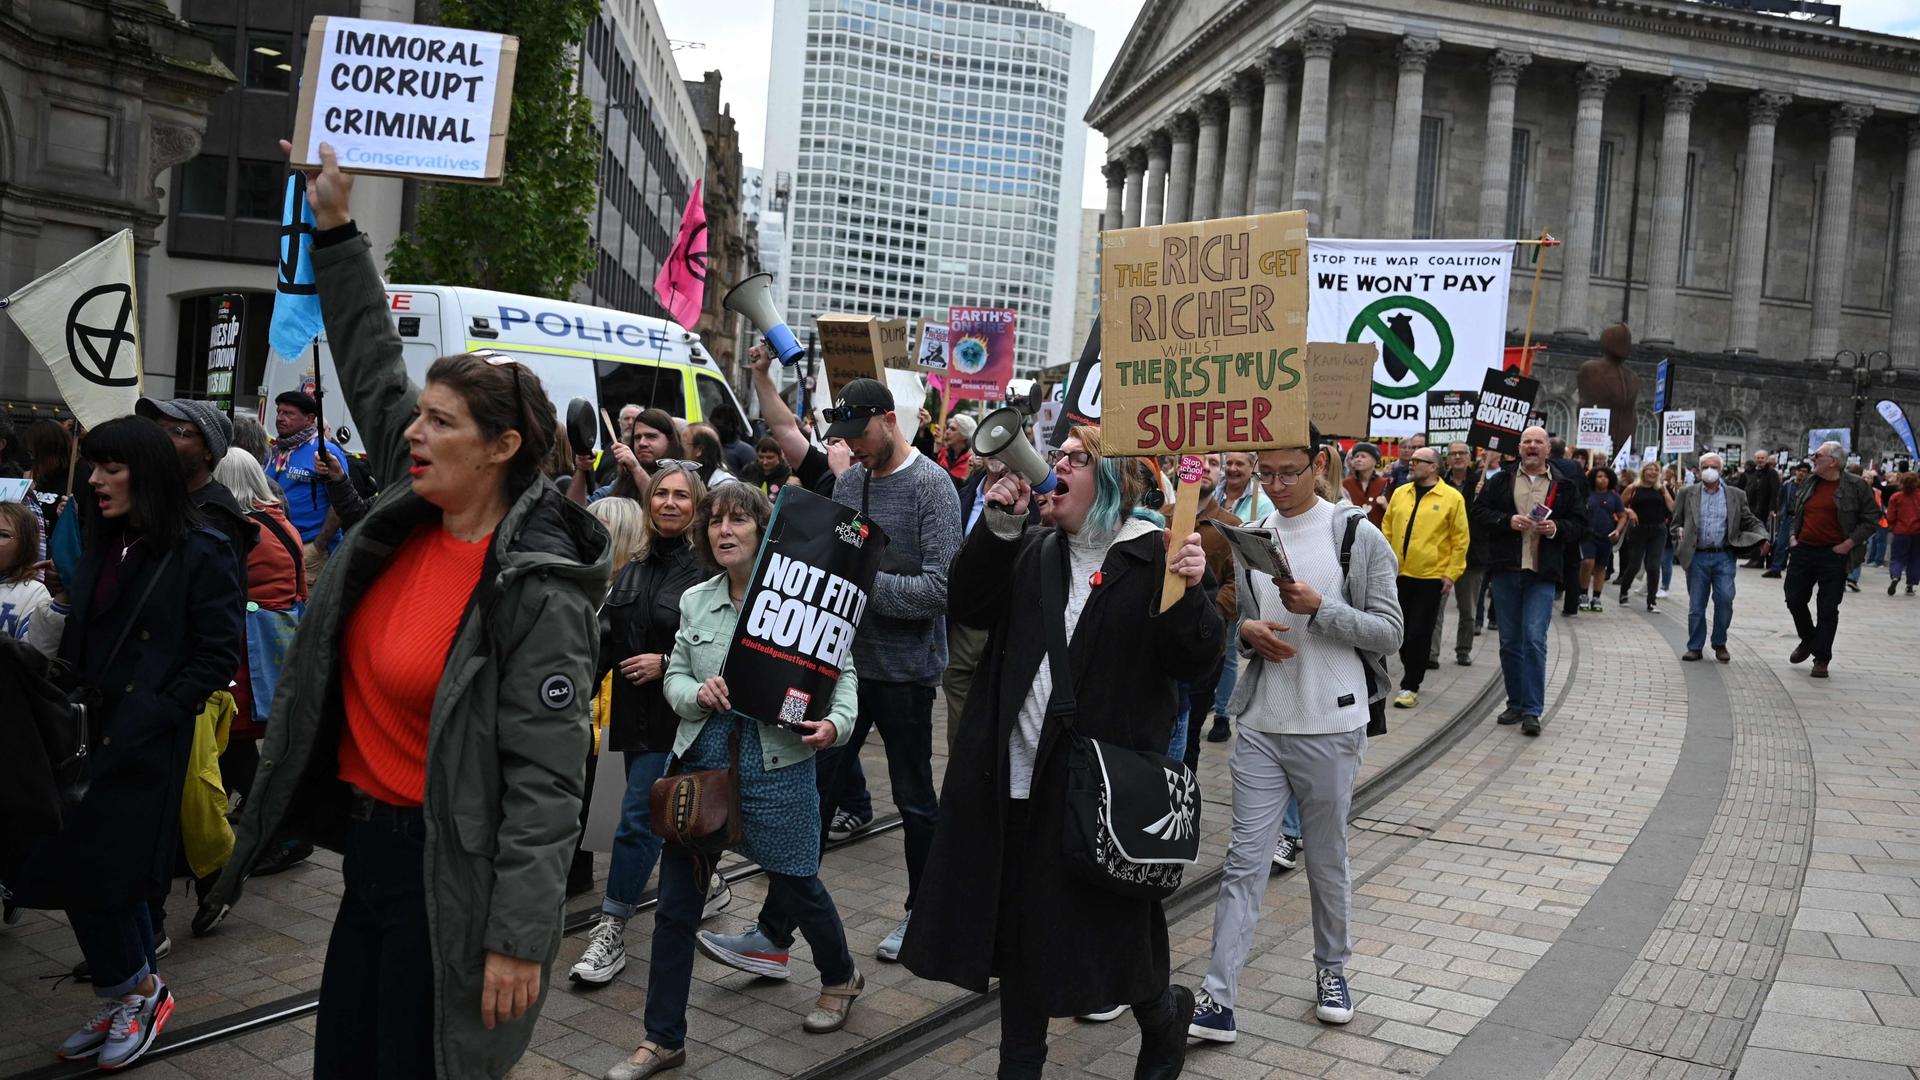 Des manifestants ont brandi des pancartes lors d'une manifestation antigouvernementale sur la place Victoria le jour de l'ouverture de la conférence annuelle du parti conservateur à Birmingham.